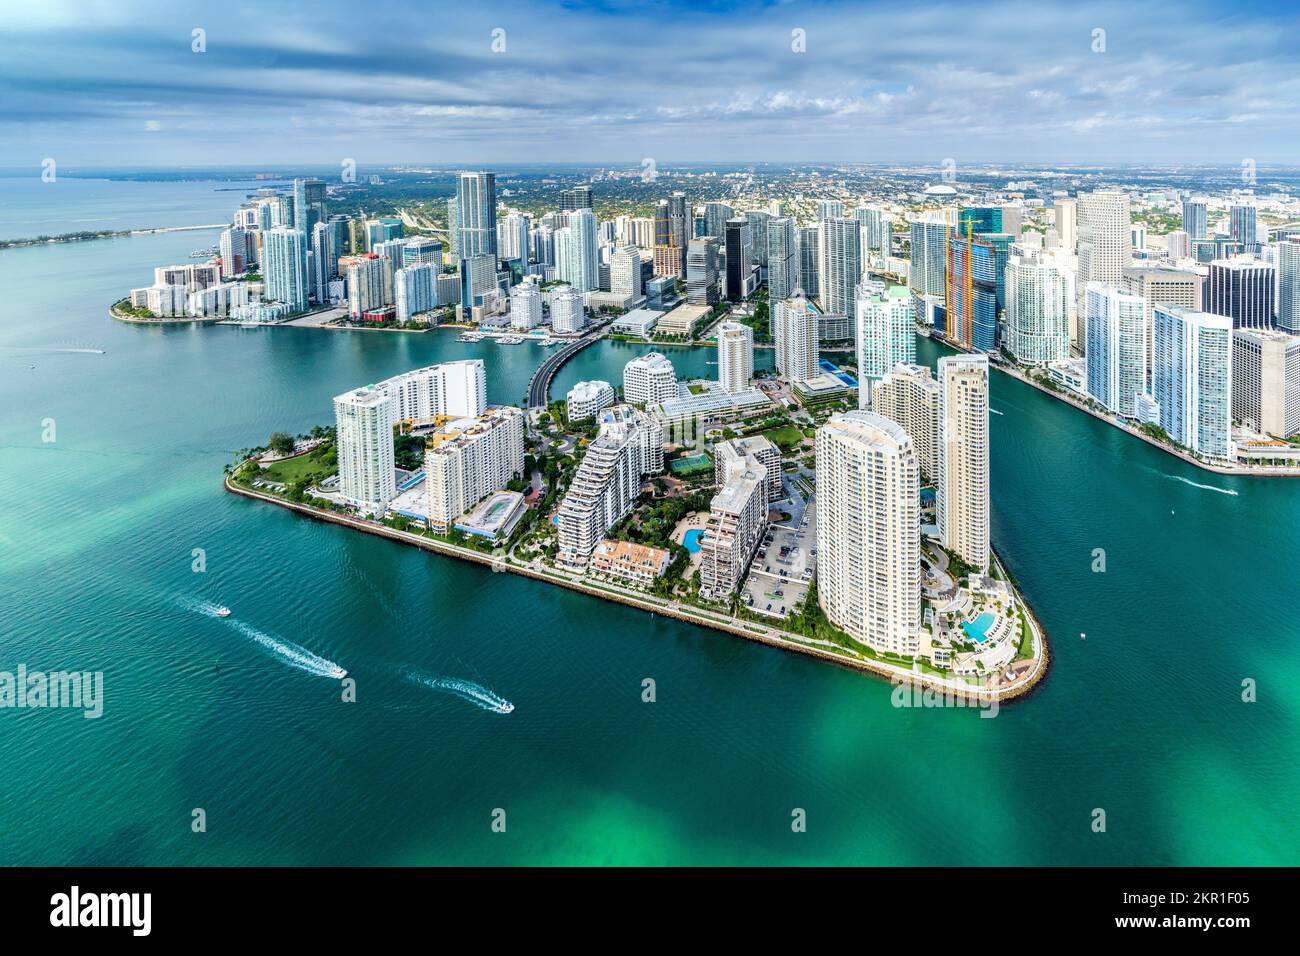 Luftaufnahme von einem Hubschrauber aus der Innenstadt von Miami, Brickell Key South Miami Beach, Miami Dade, Florida, Nordamerika, USA Stockfoto